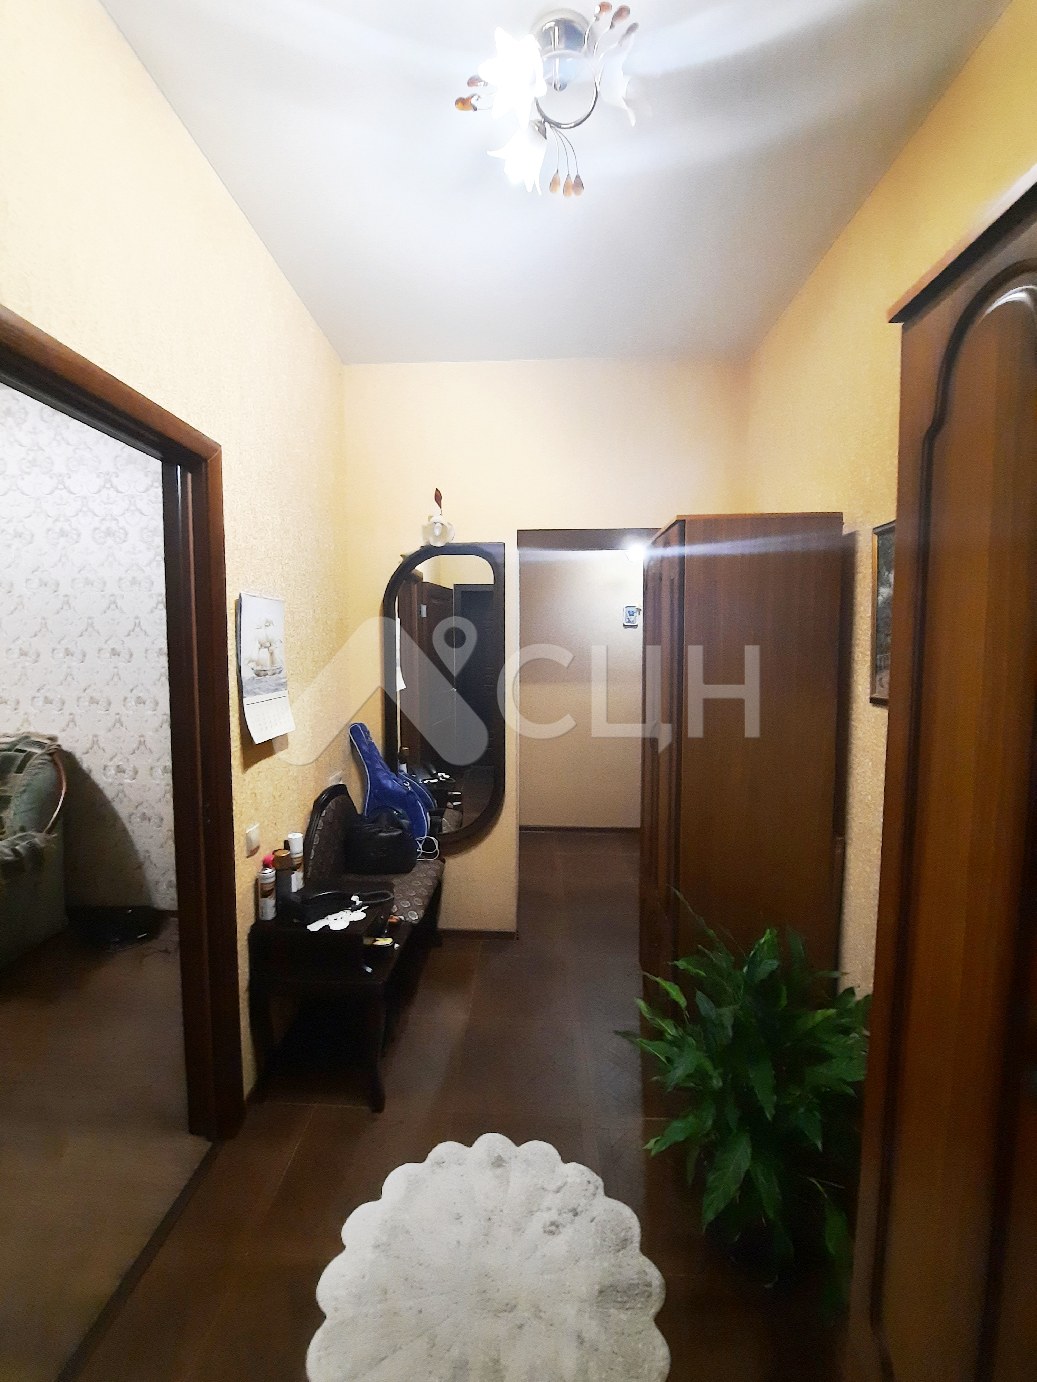 продажа домов саров
: Г. Саров, улица Дзержинского, 7, 2-комн квартира, этаж 1 из 3, продажа.